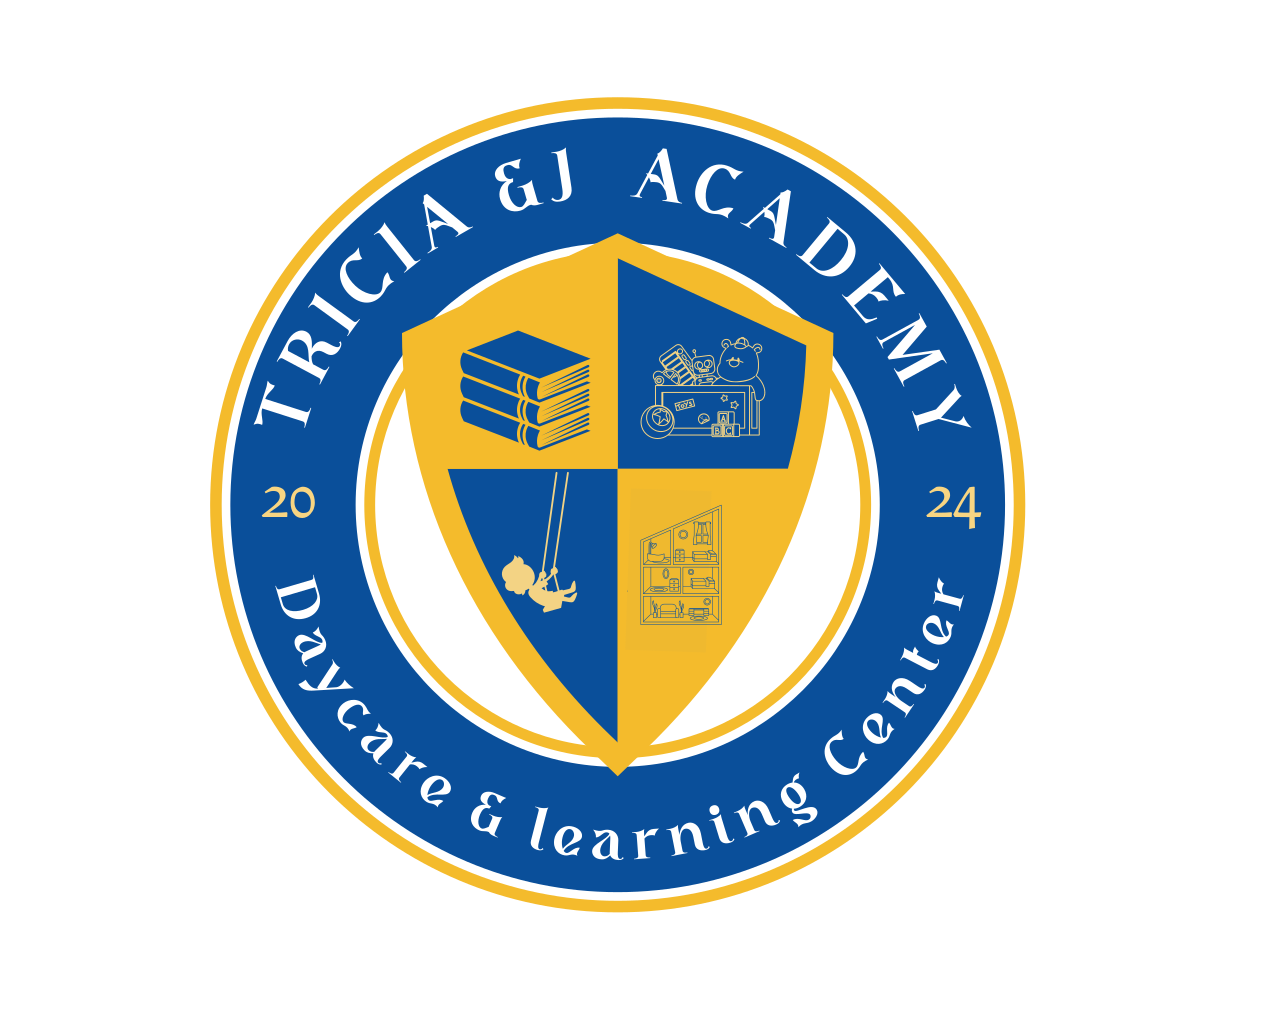 www.triciaj-academy.com's logo